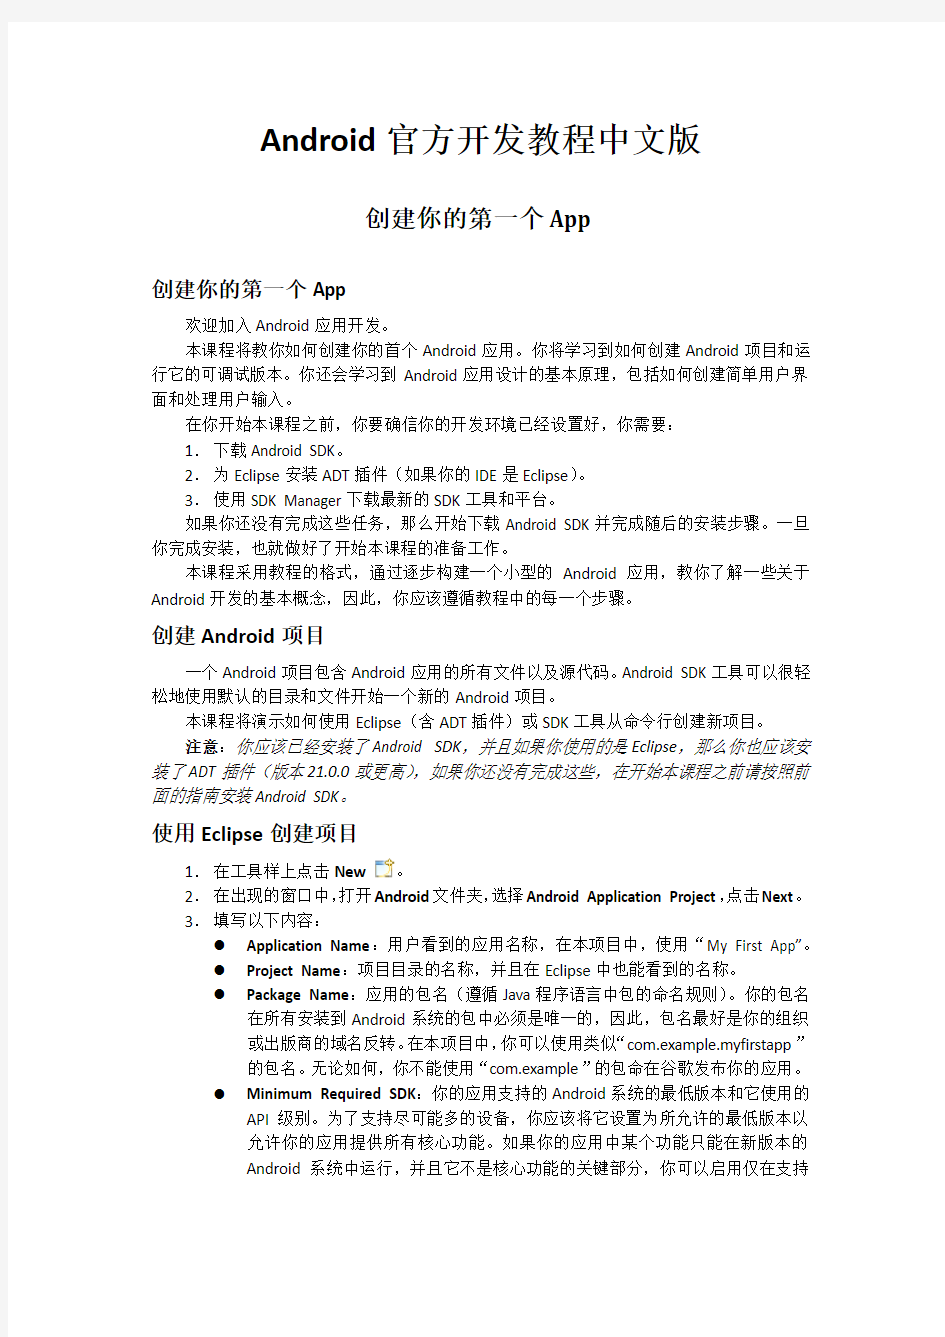 Android官方开发教程中文版(一)